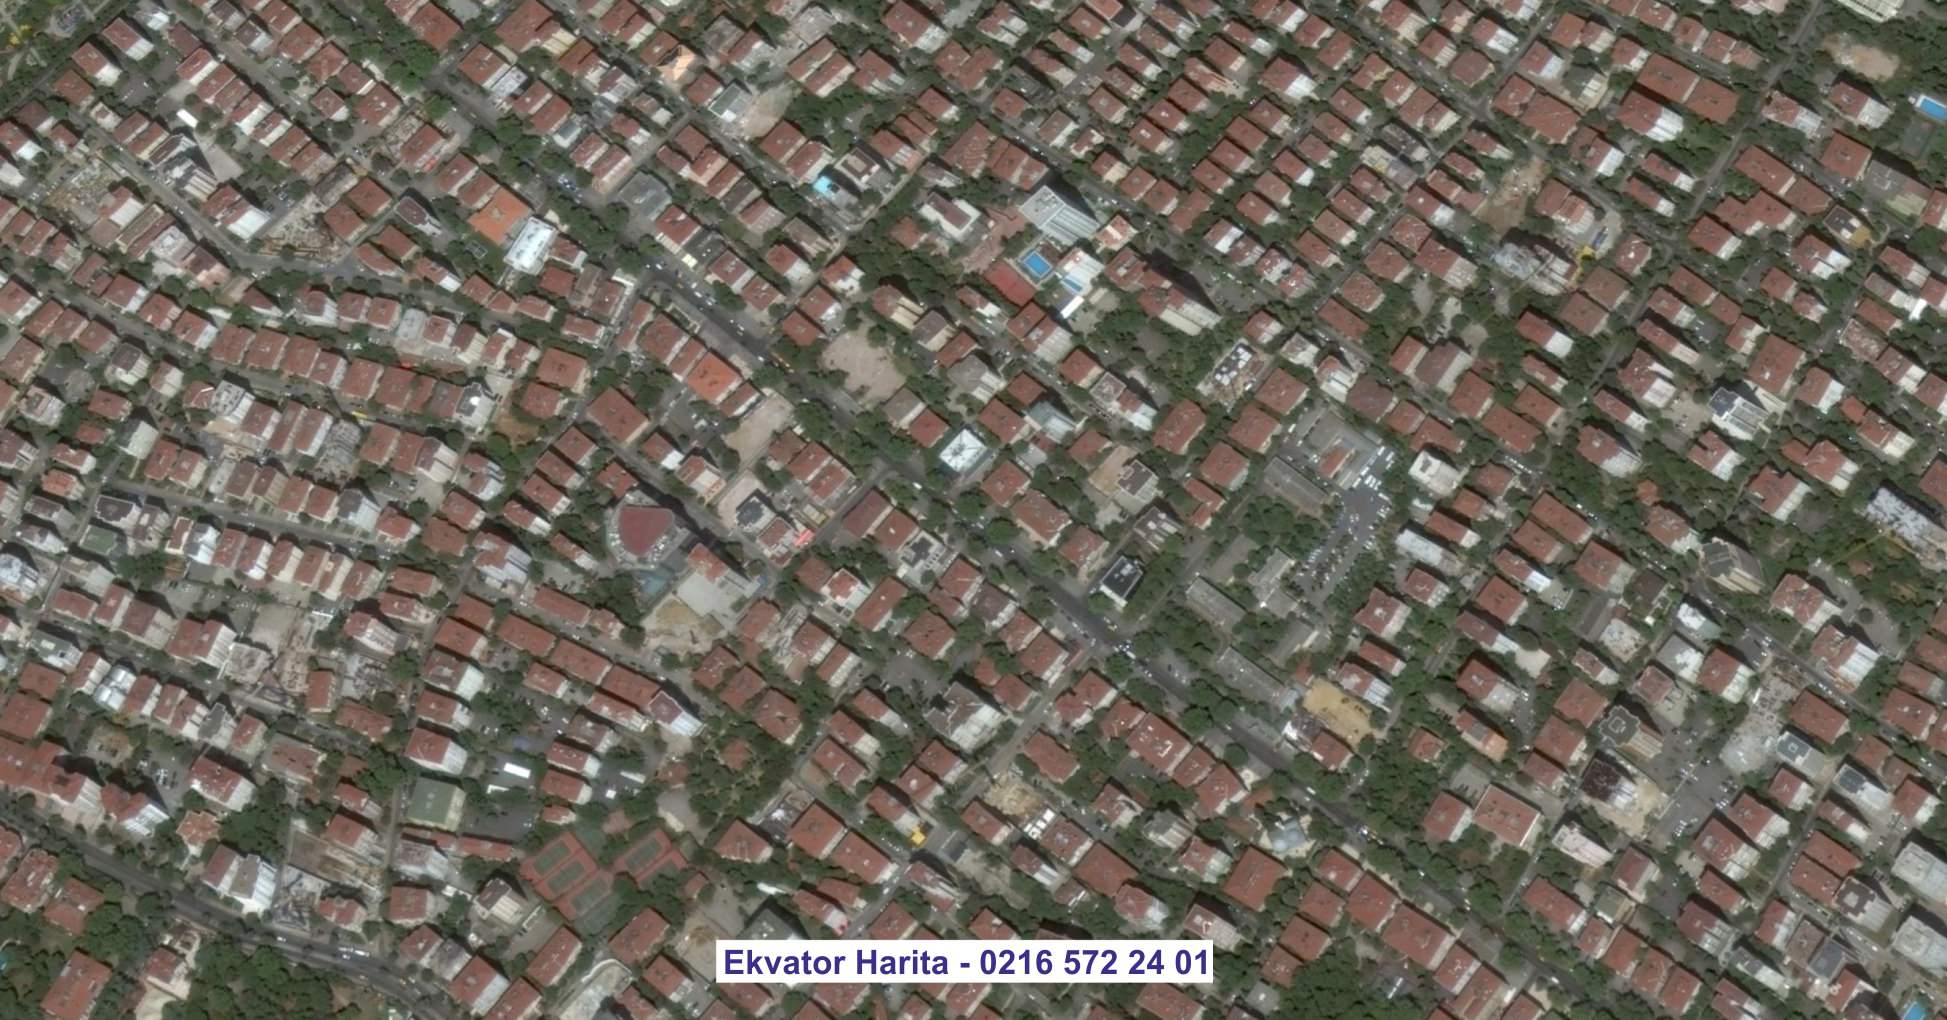 Samsun Uydu Görüntüsü Örnek Fotoğrafı